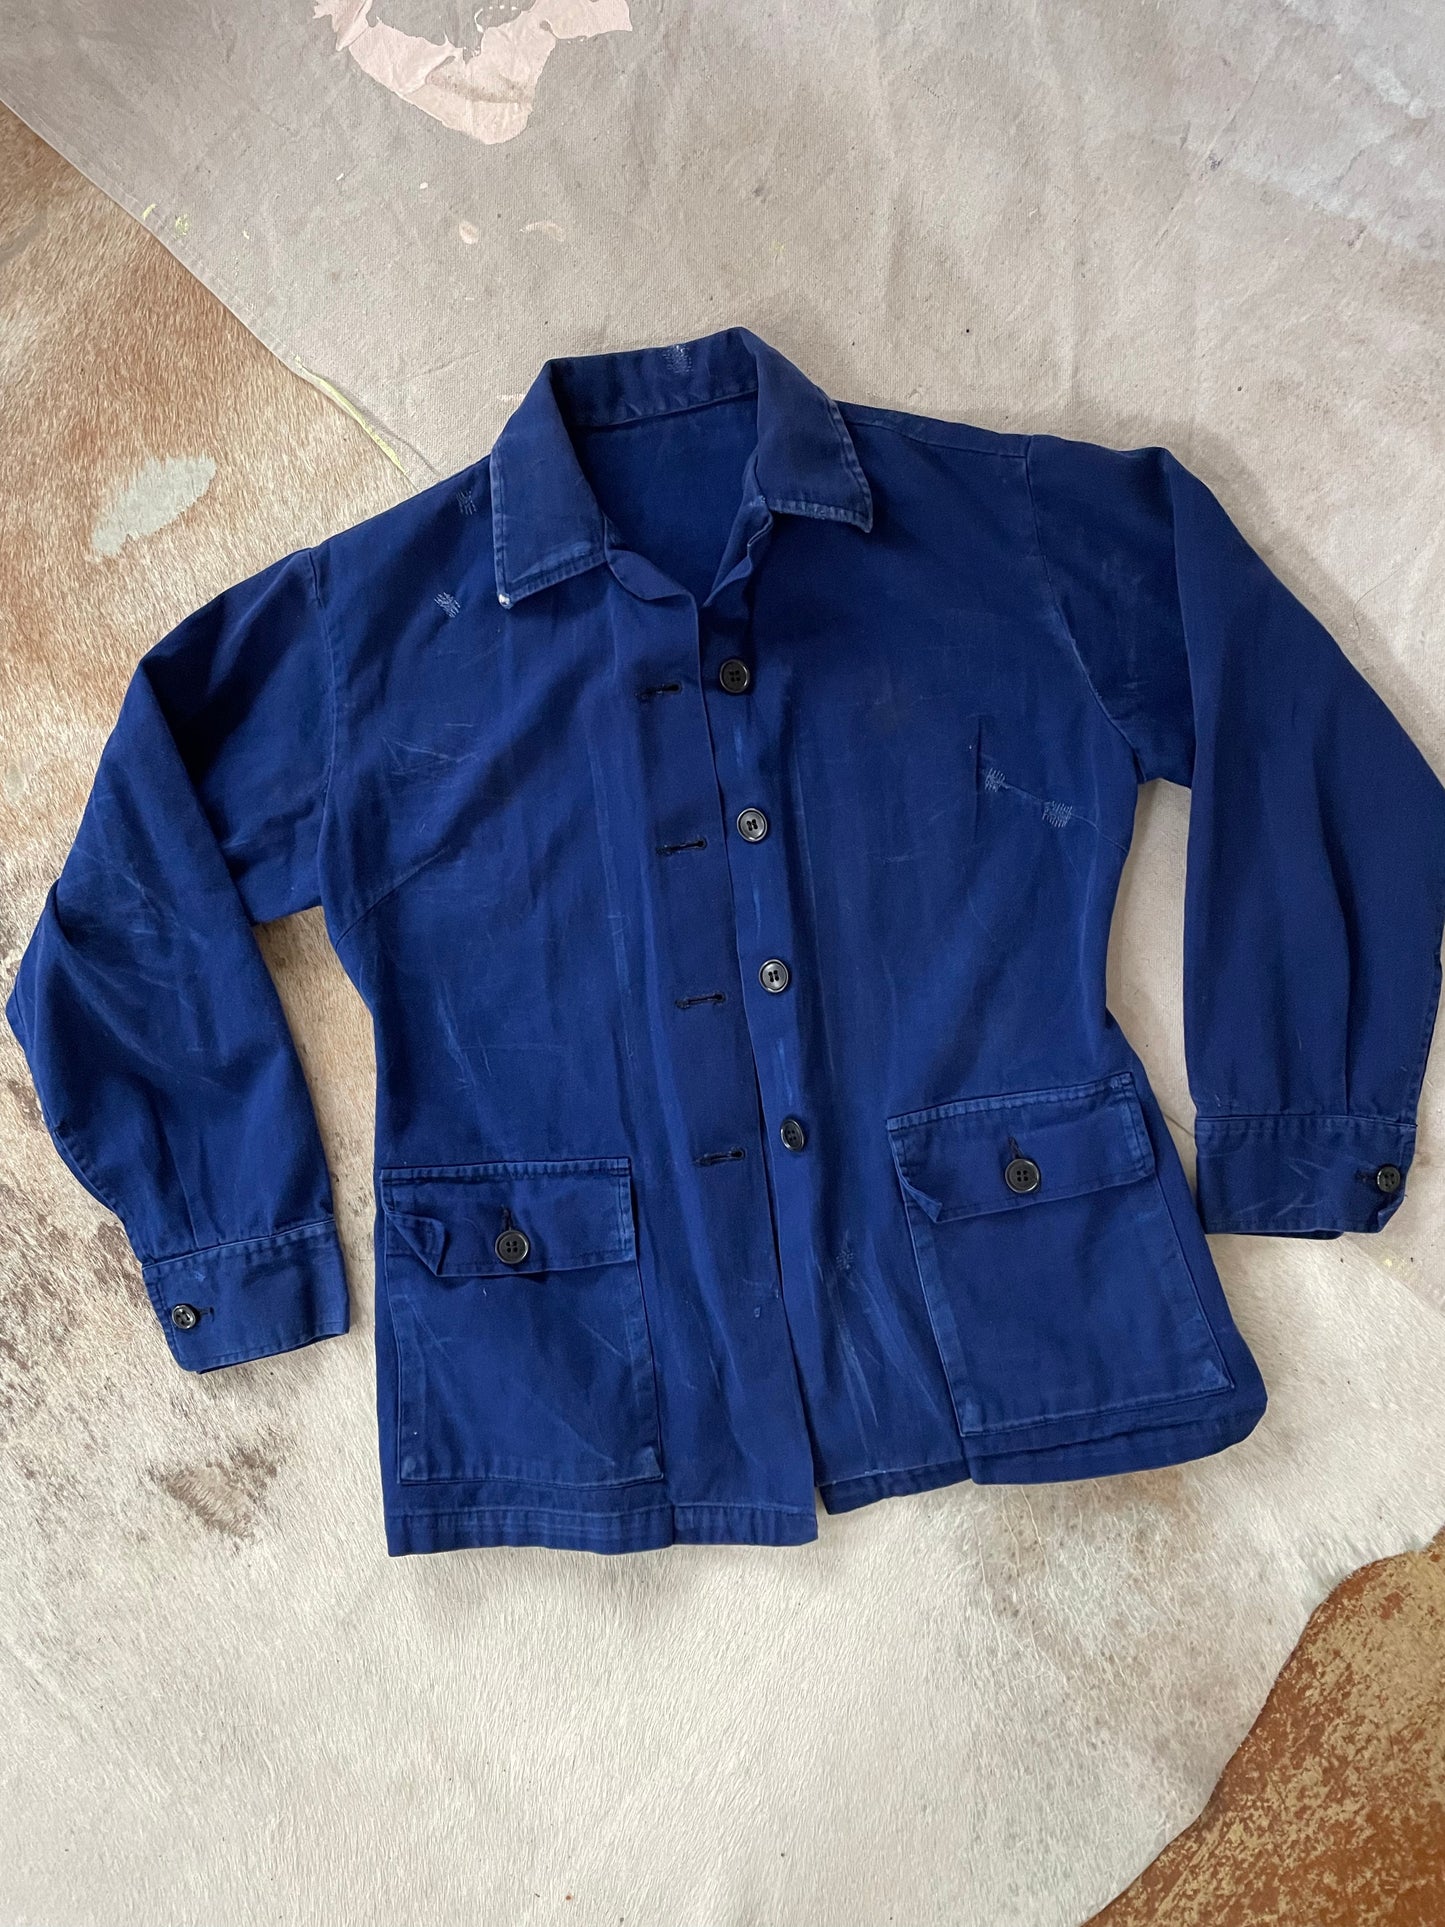 French Chore Coat, Work Shirt, Shacket